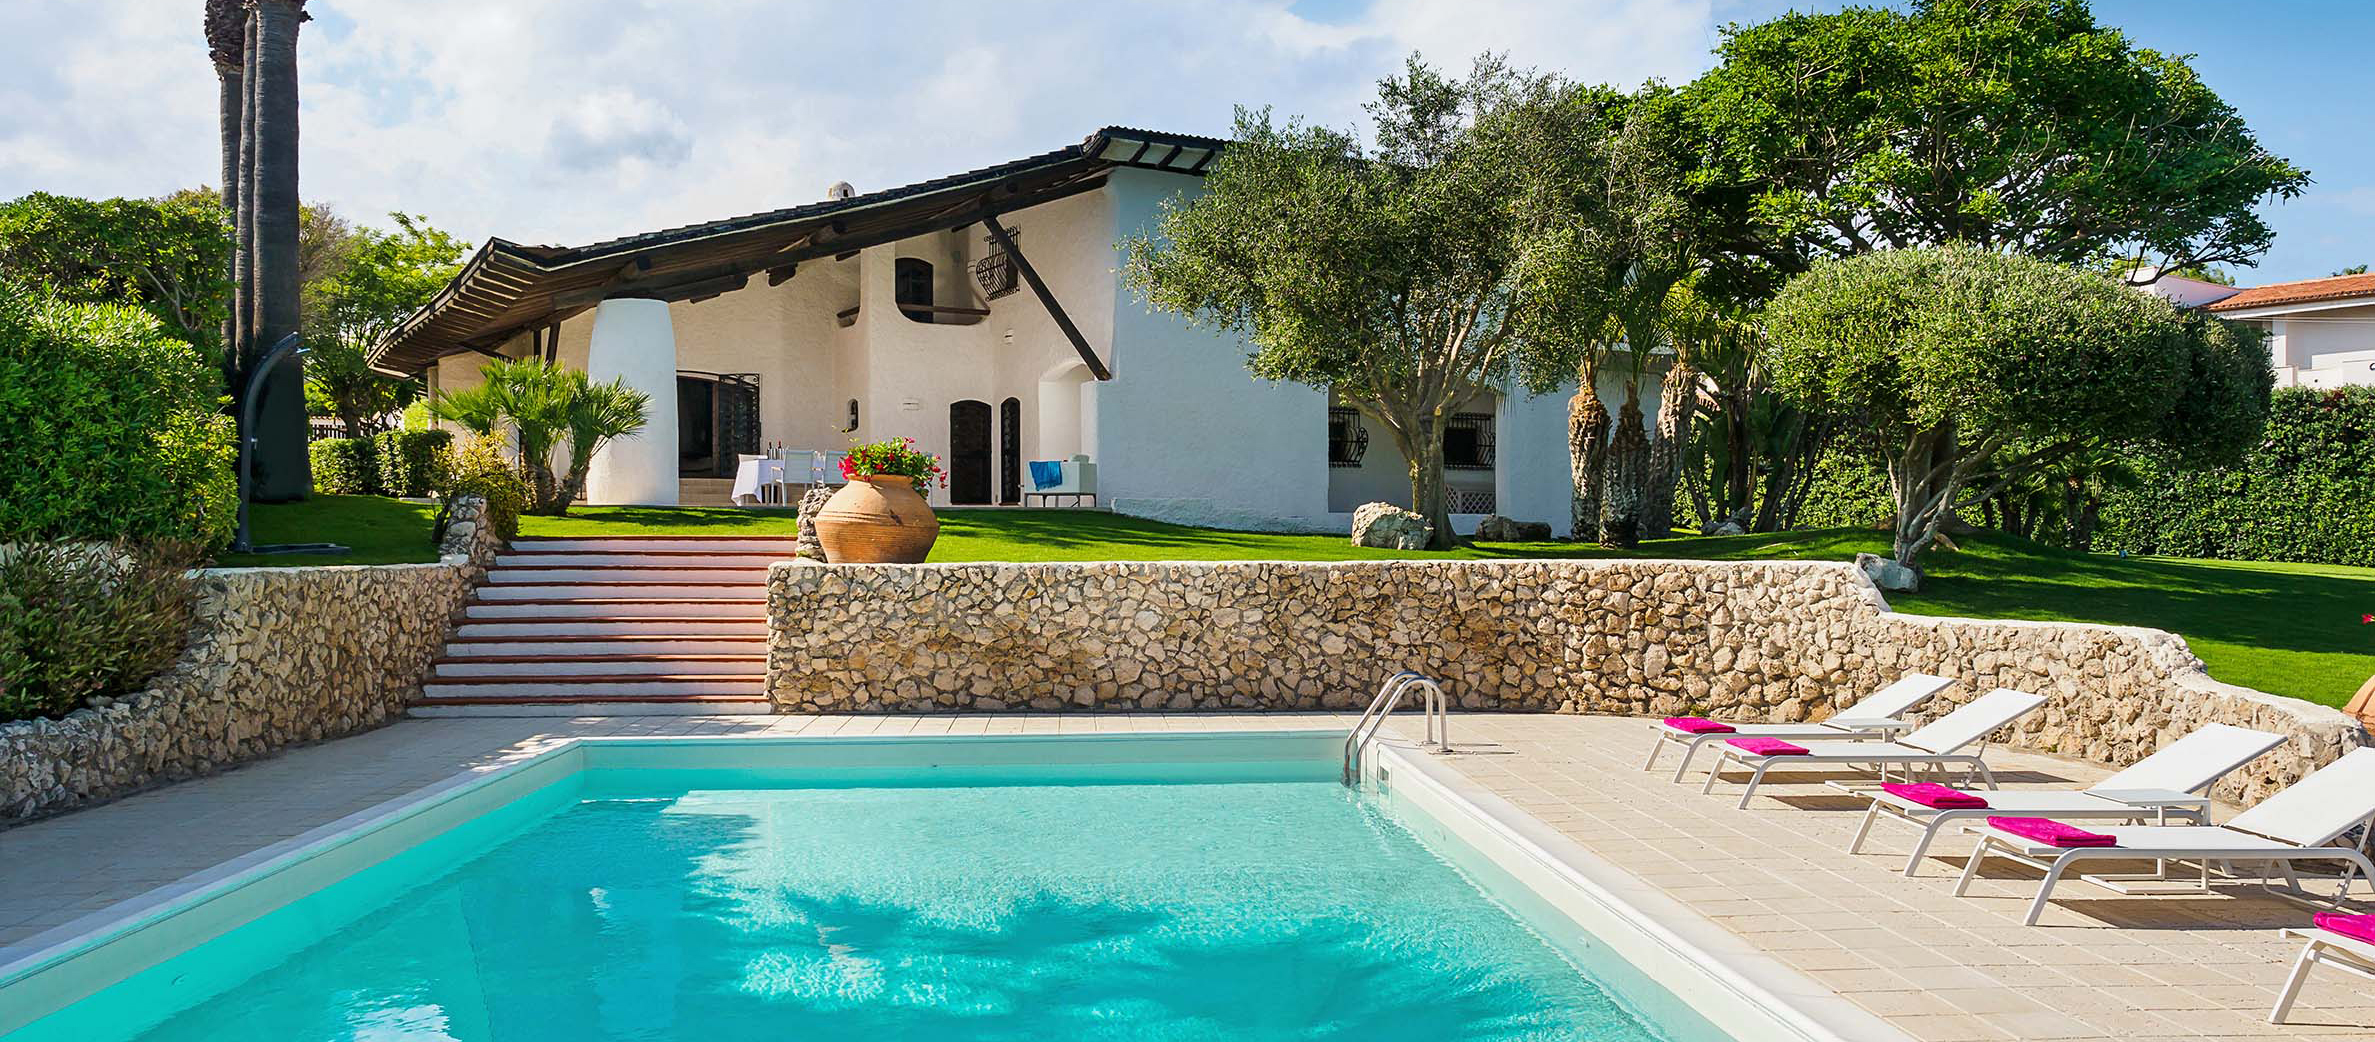 Blue Moon, Fontane Bianche, Sicilia - Villa con piscina in affitto - 2